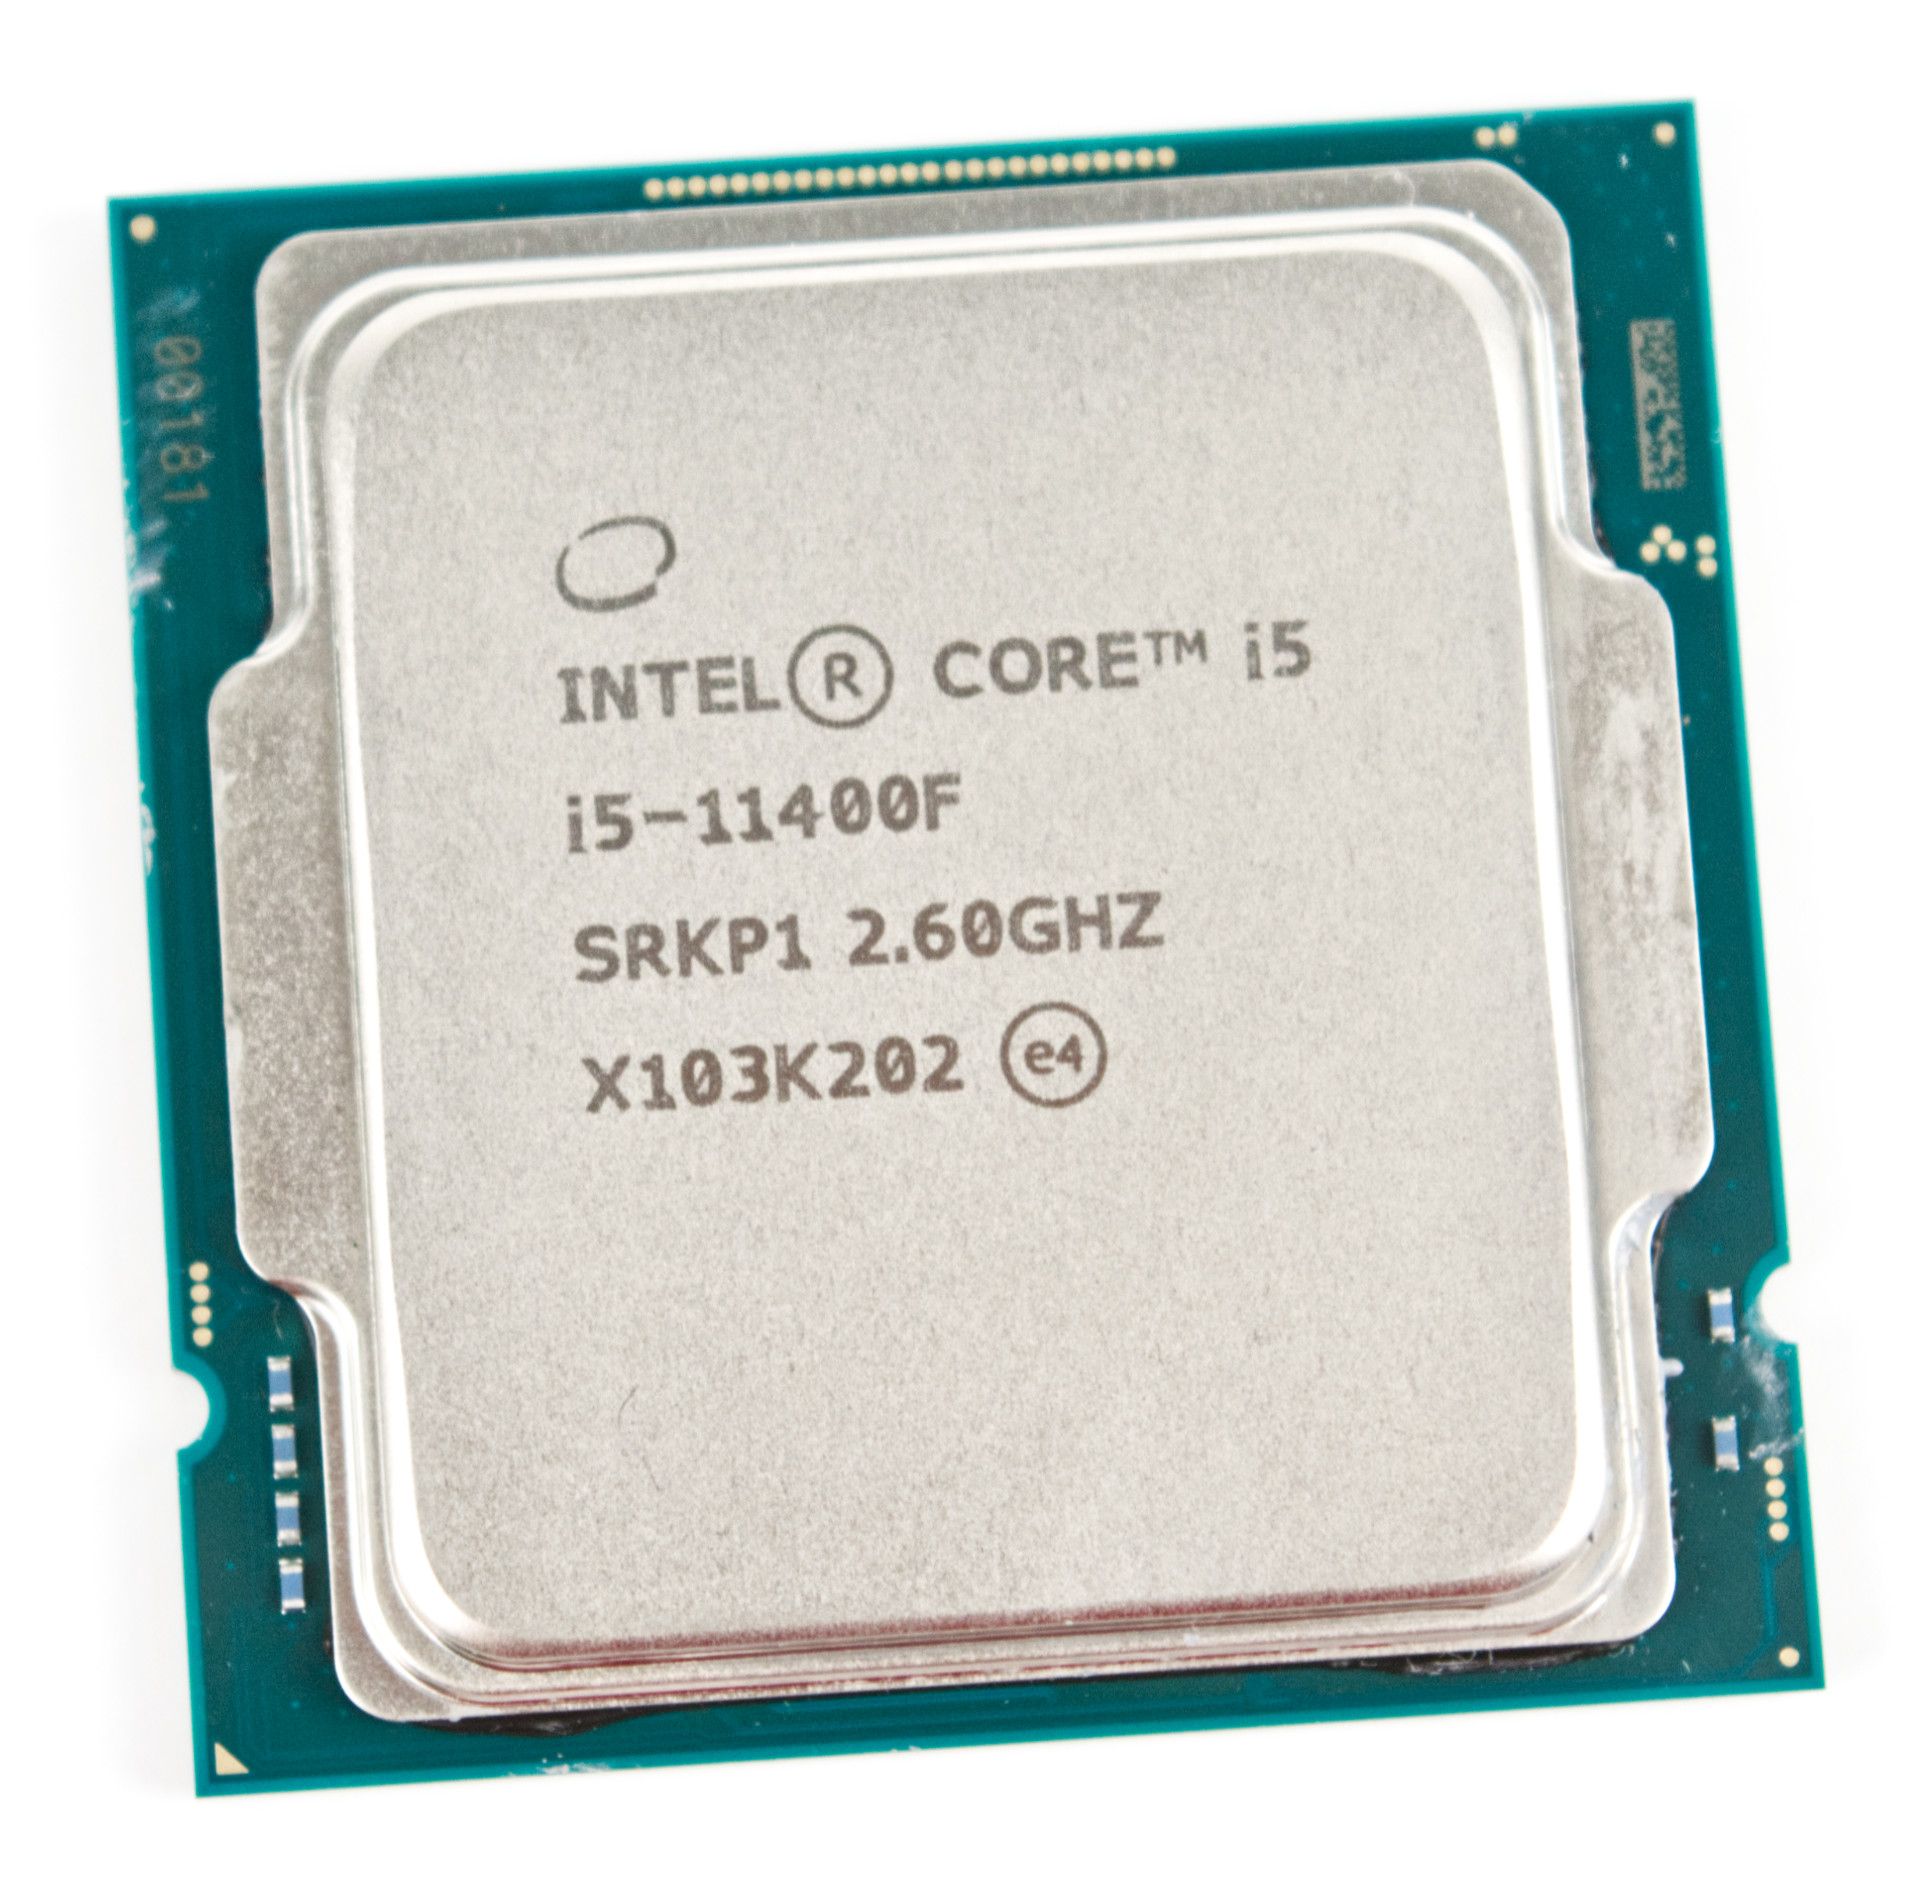 Интел 12400ф. Intel i5 11400f. Intel Core i5-11400f. Процессор Intel Core i5 11400f, LGA 1200. Core i5 11400f сокет.